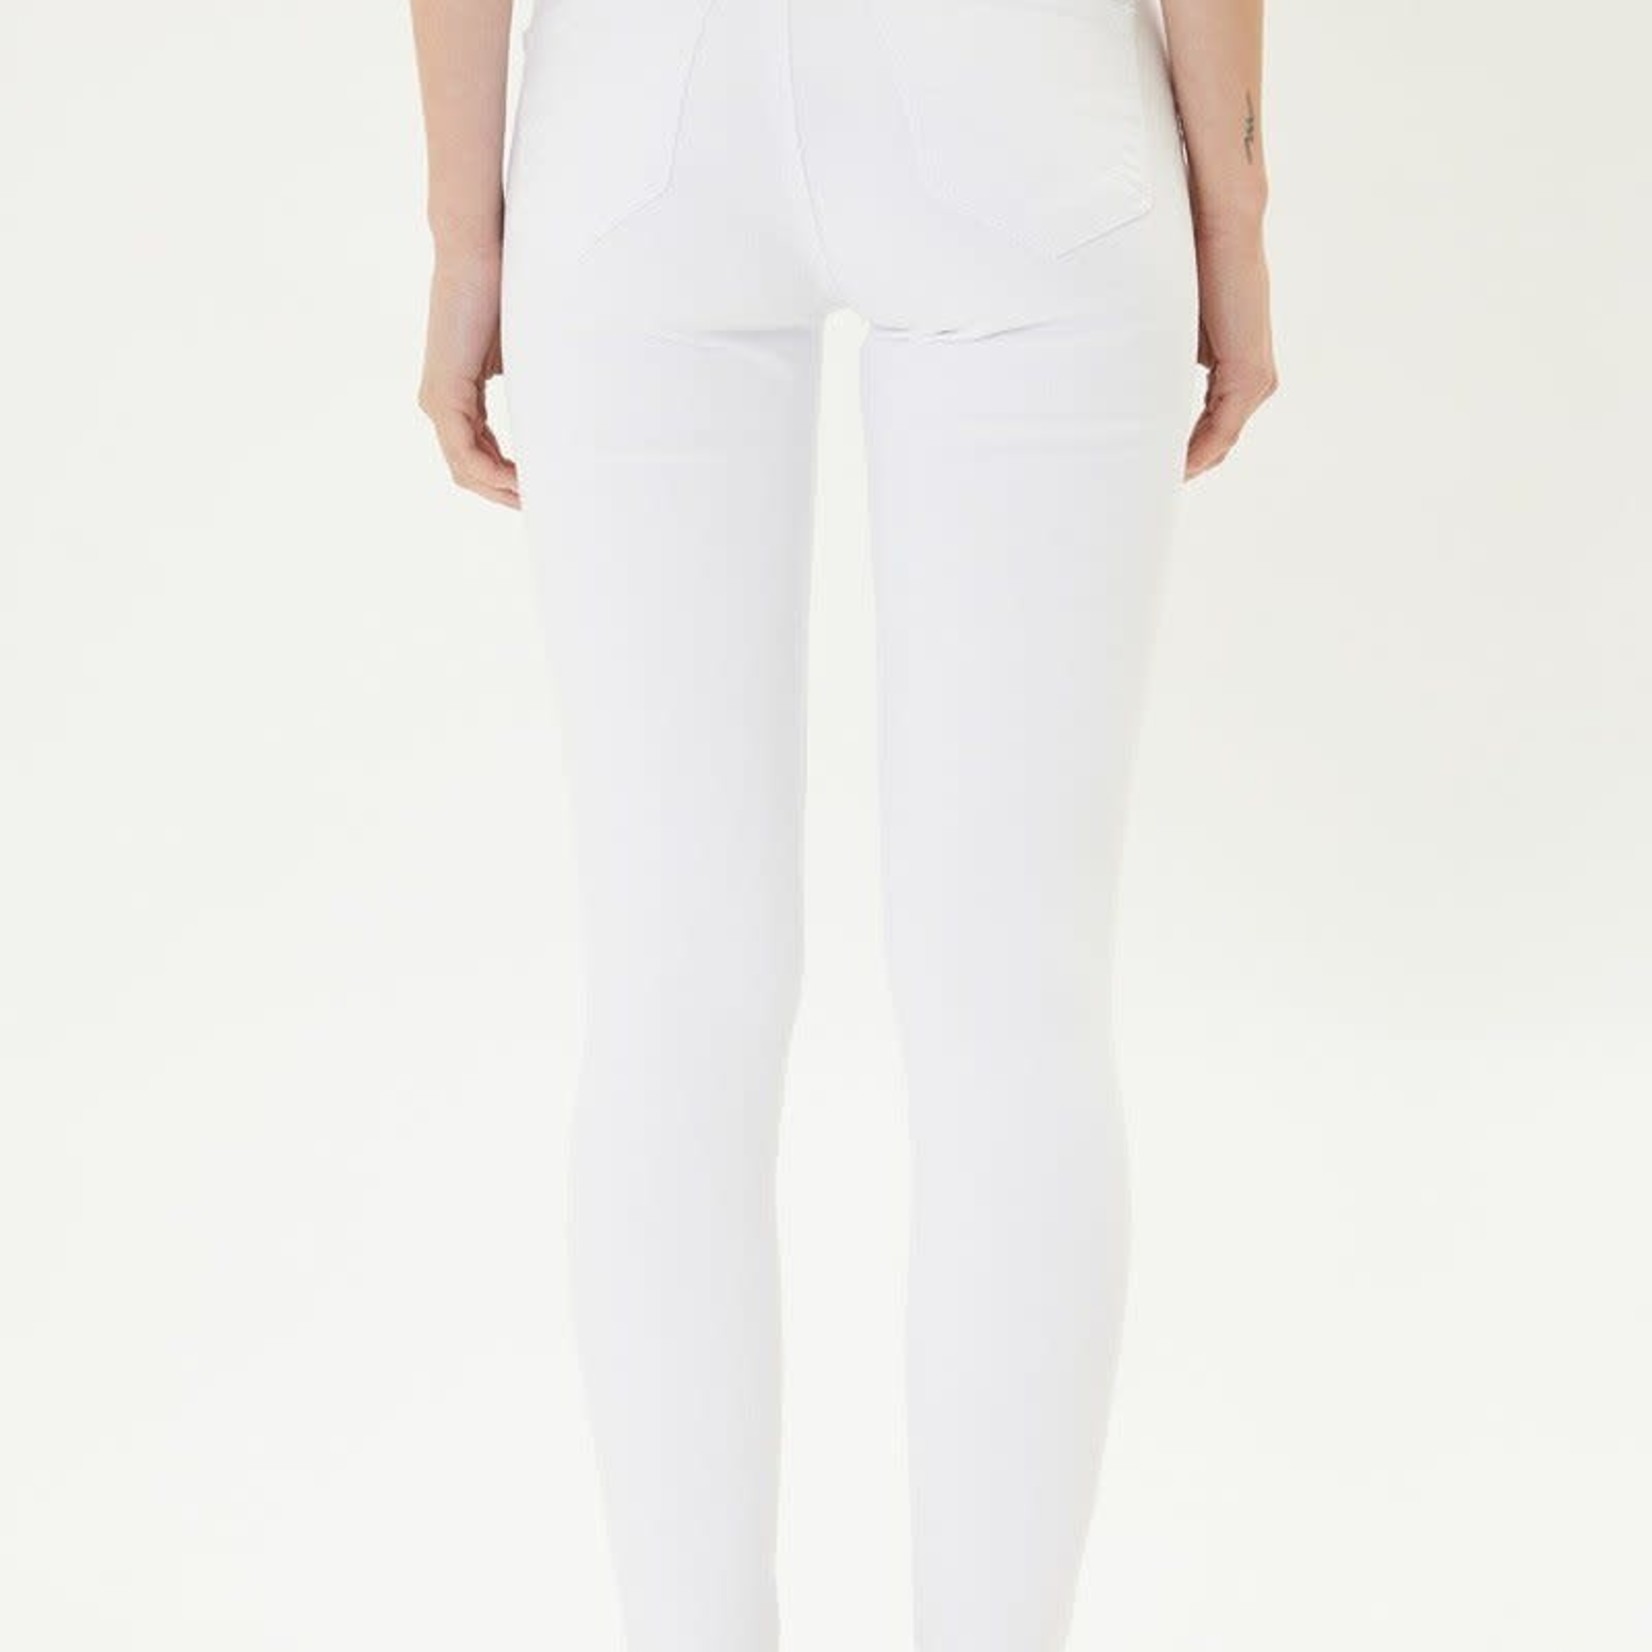 Kancan High Rise Super Skinny White Jeans